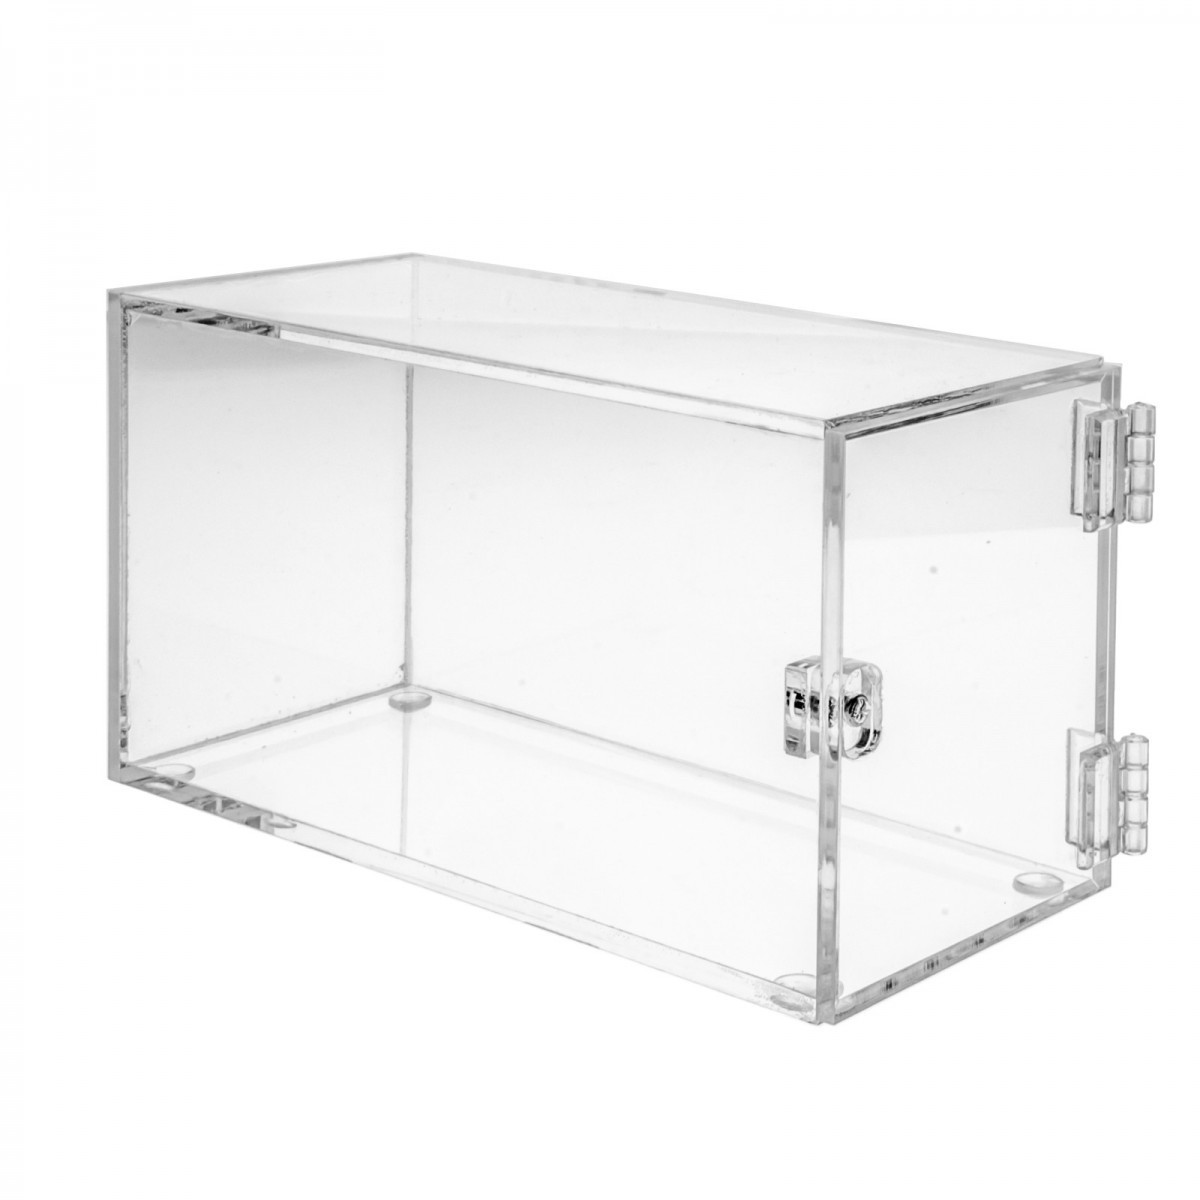 Schaukasten aus Plexiglass, transparent